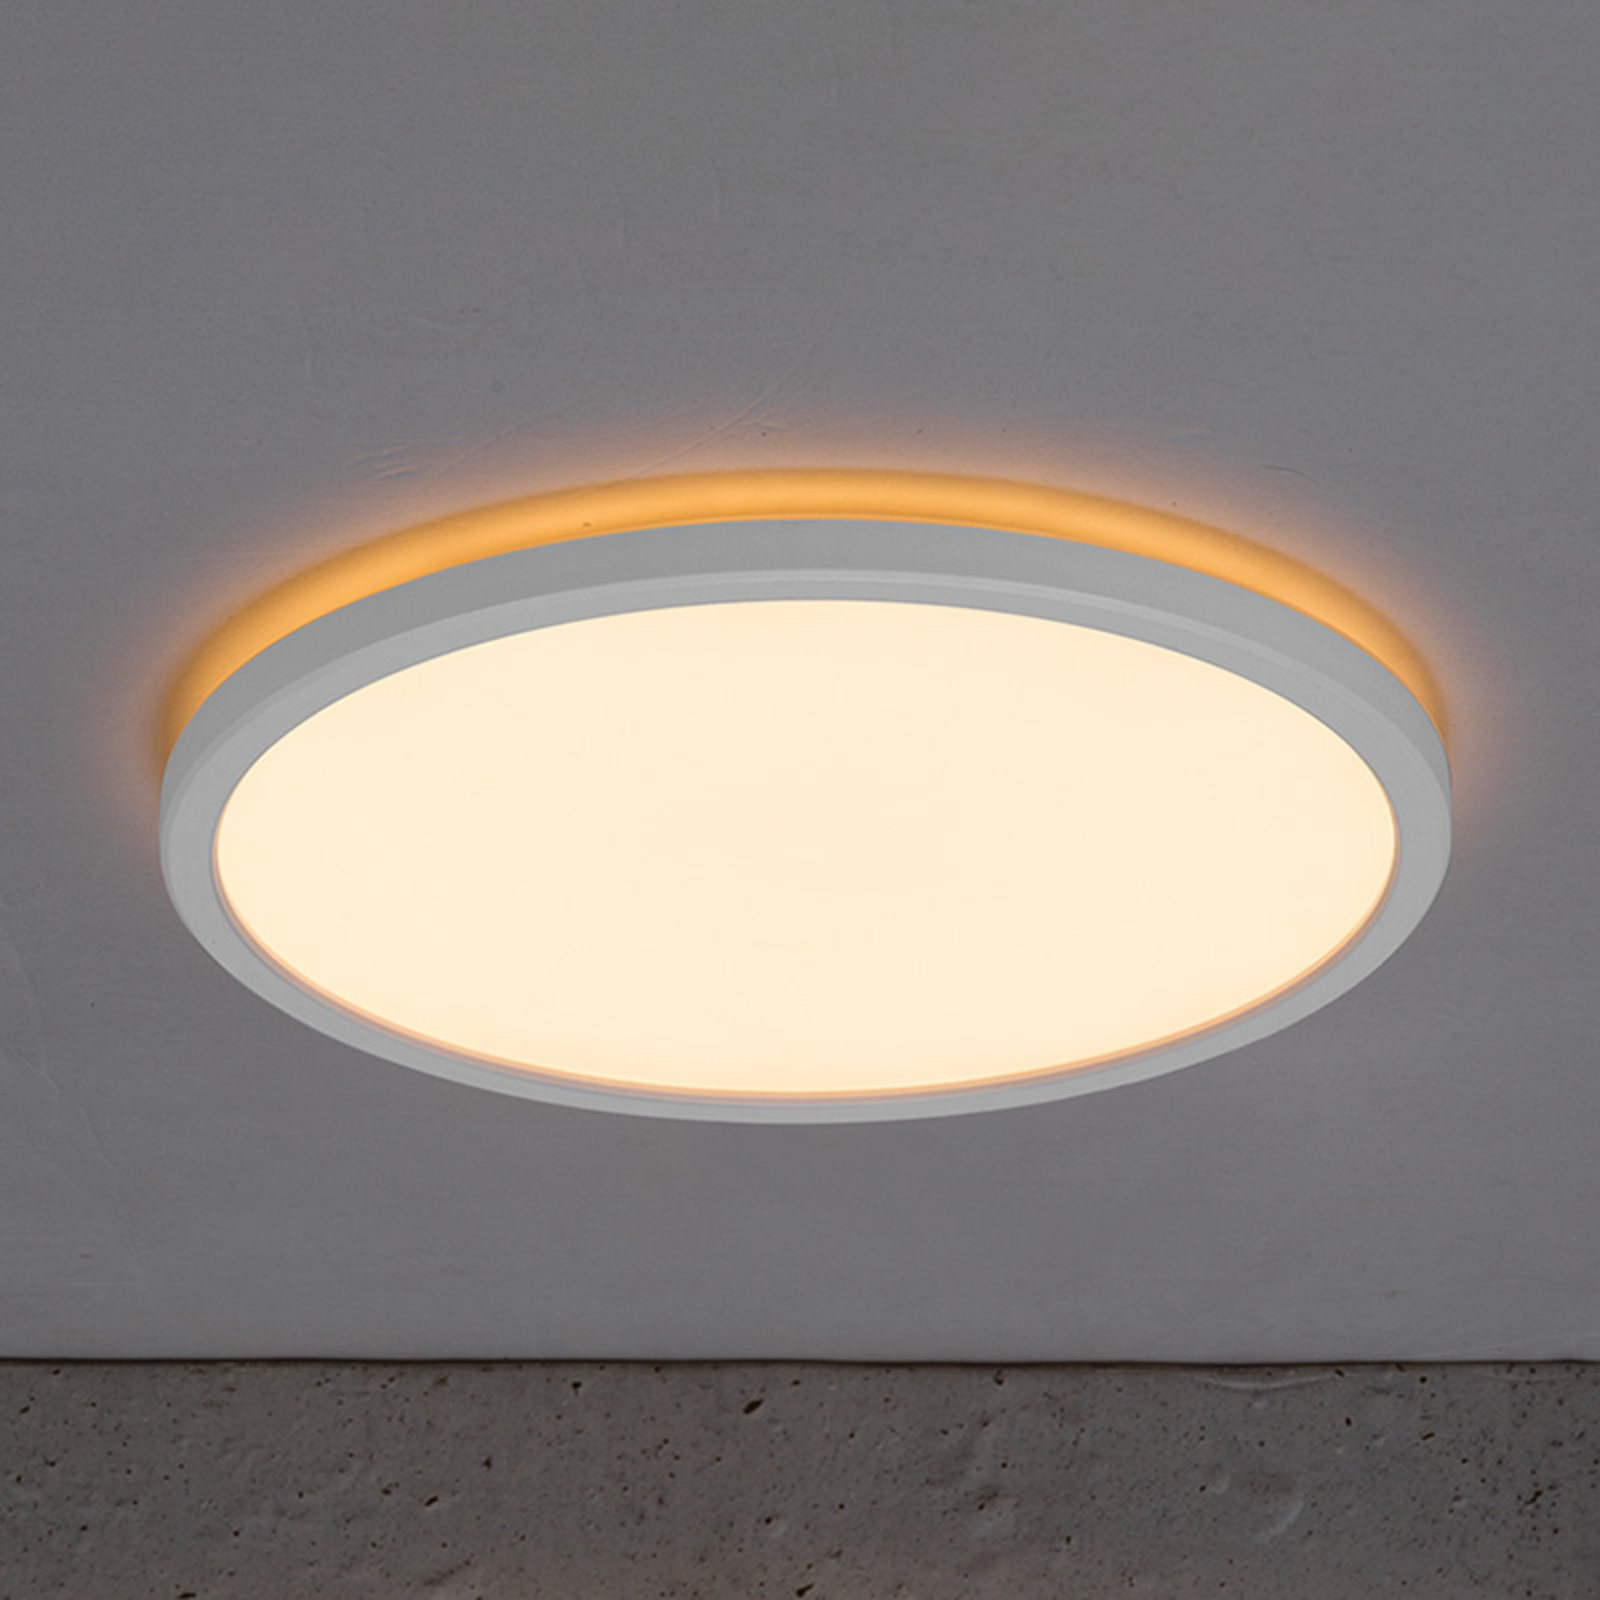 LED ceiling light Bronx 2,700 K, Ø 29 cm